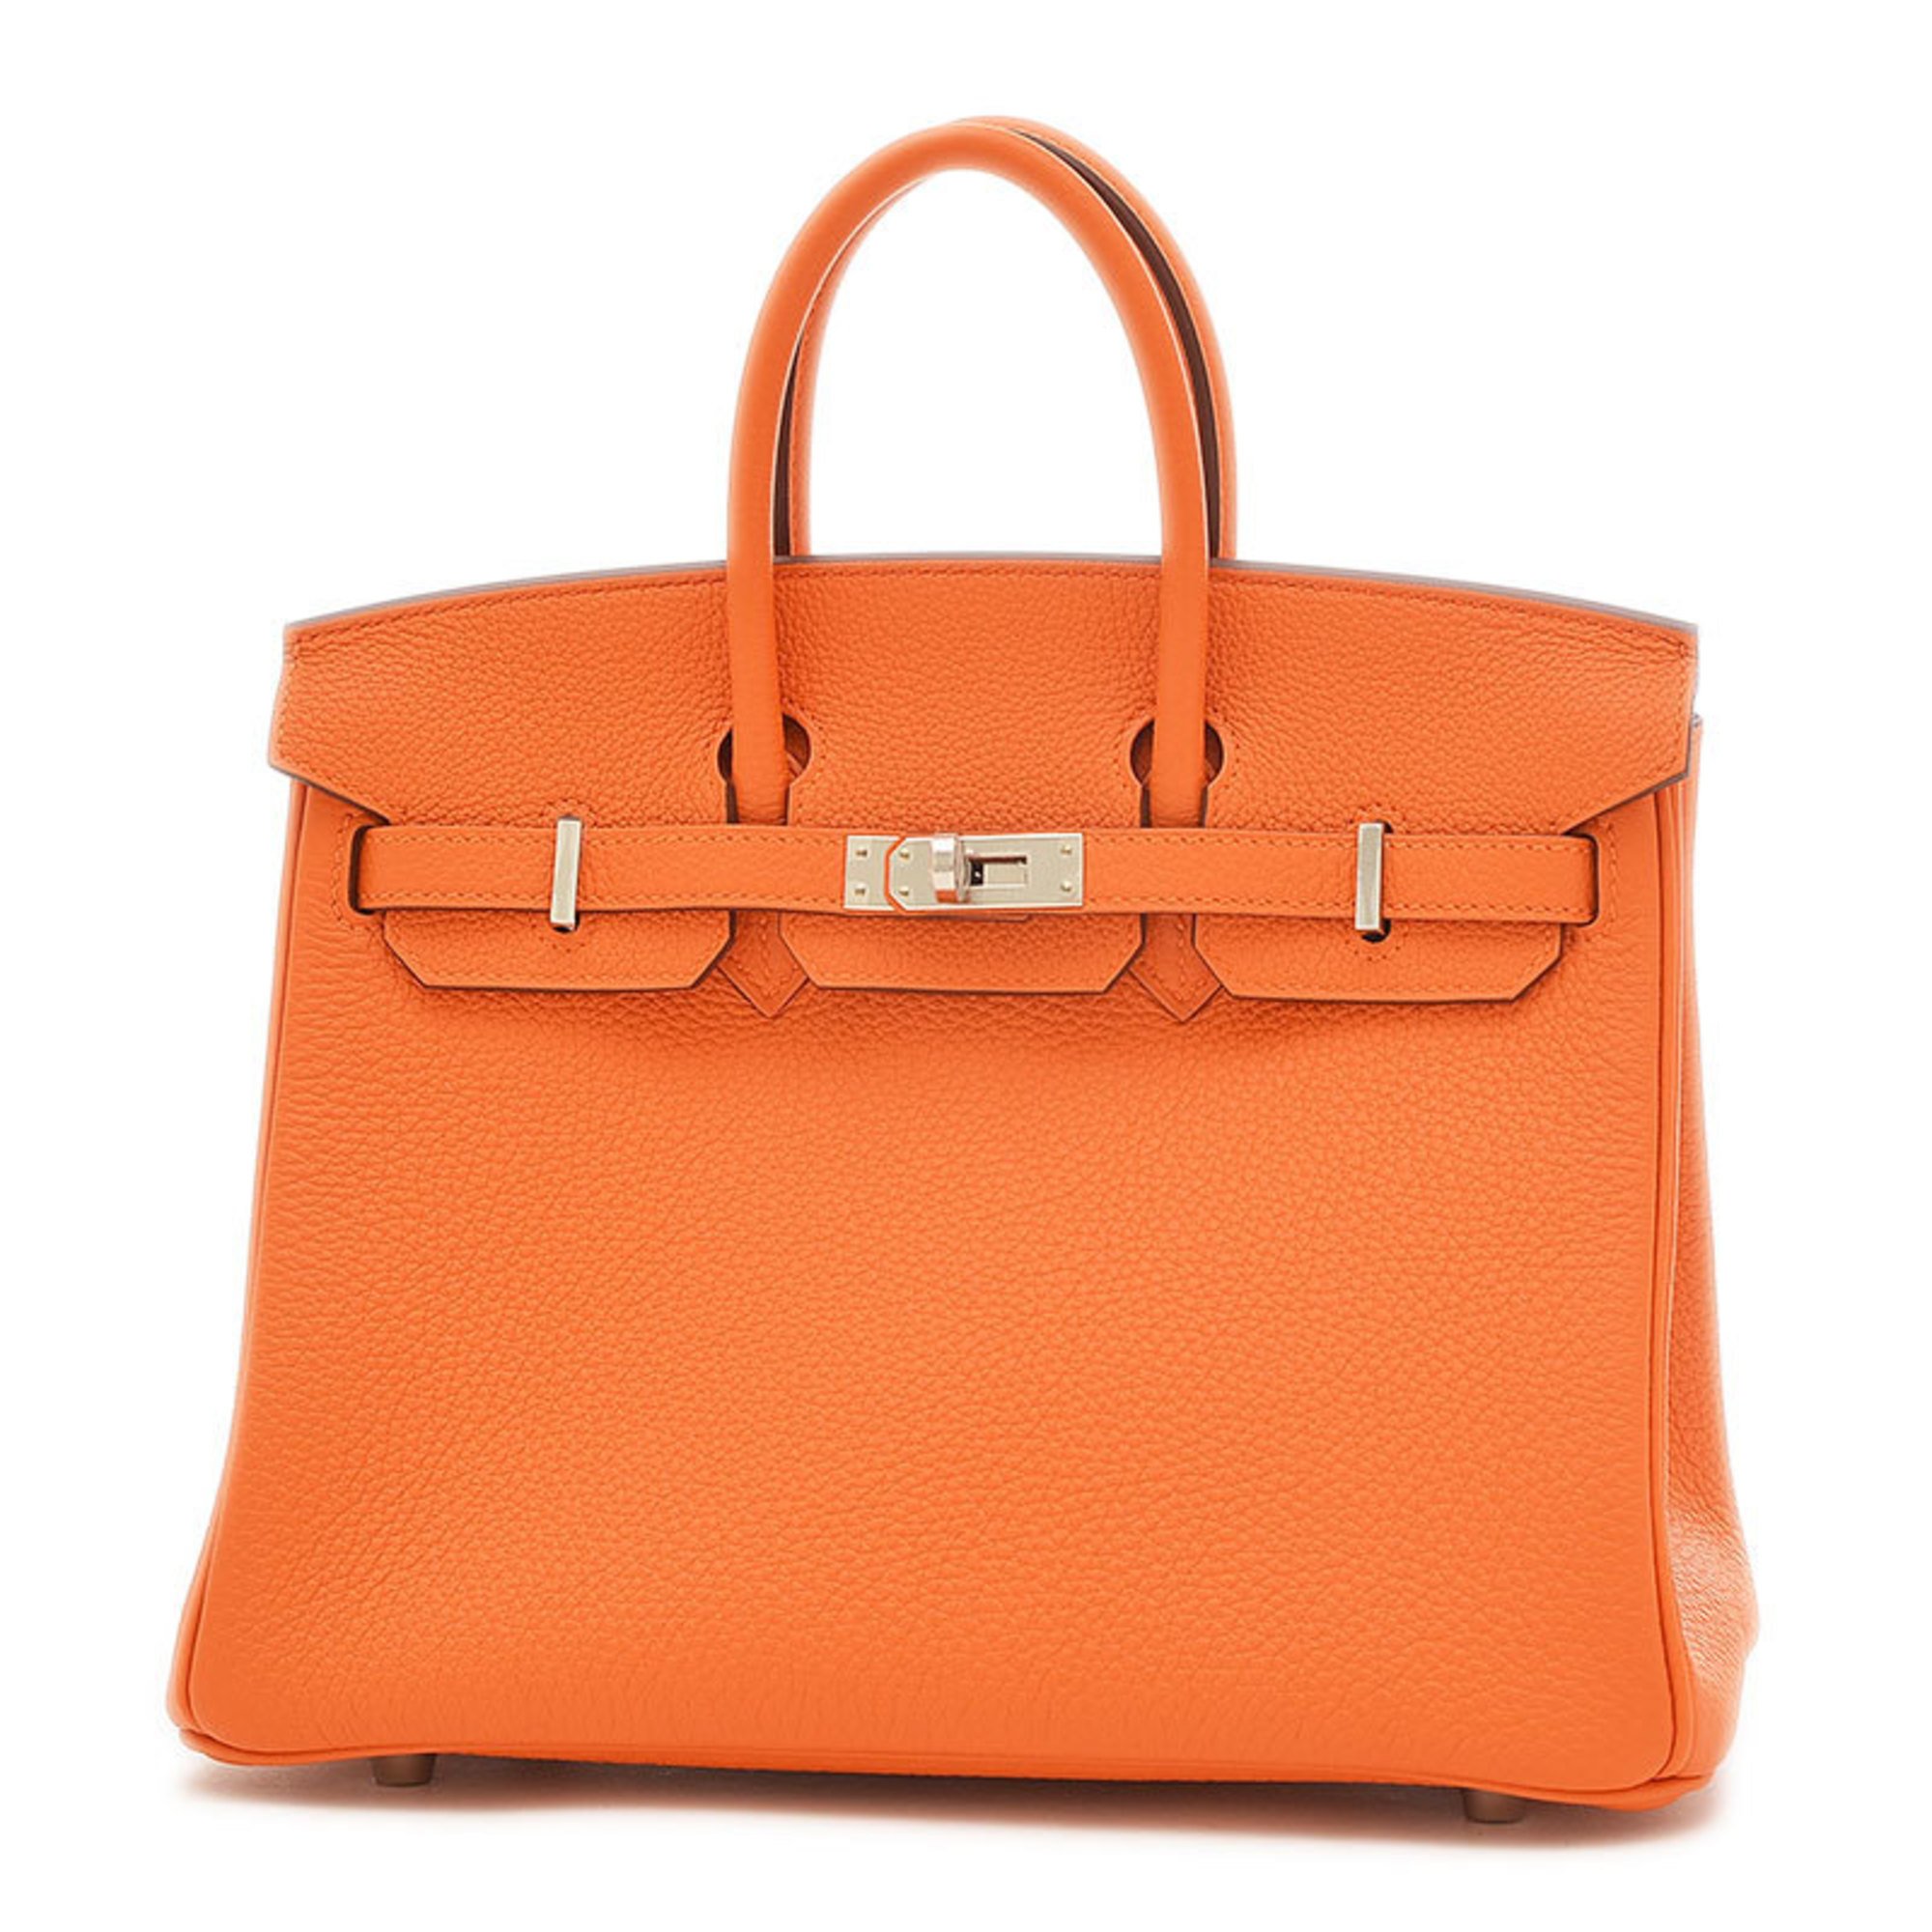 Hermes Birkin 25 Handbag Togo Orange Amber B Stamp